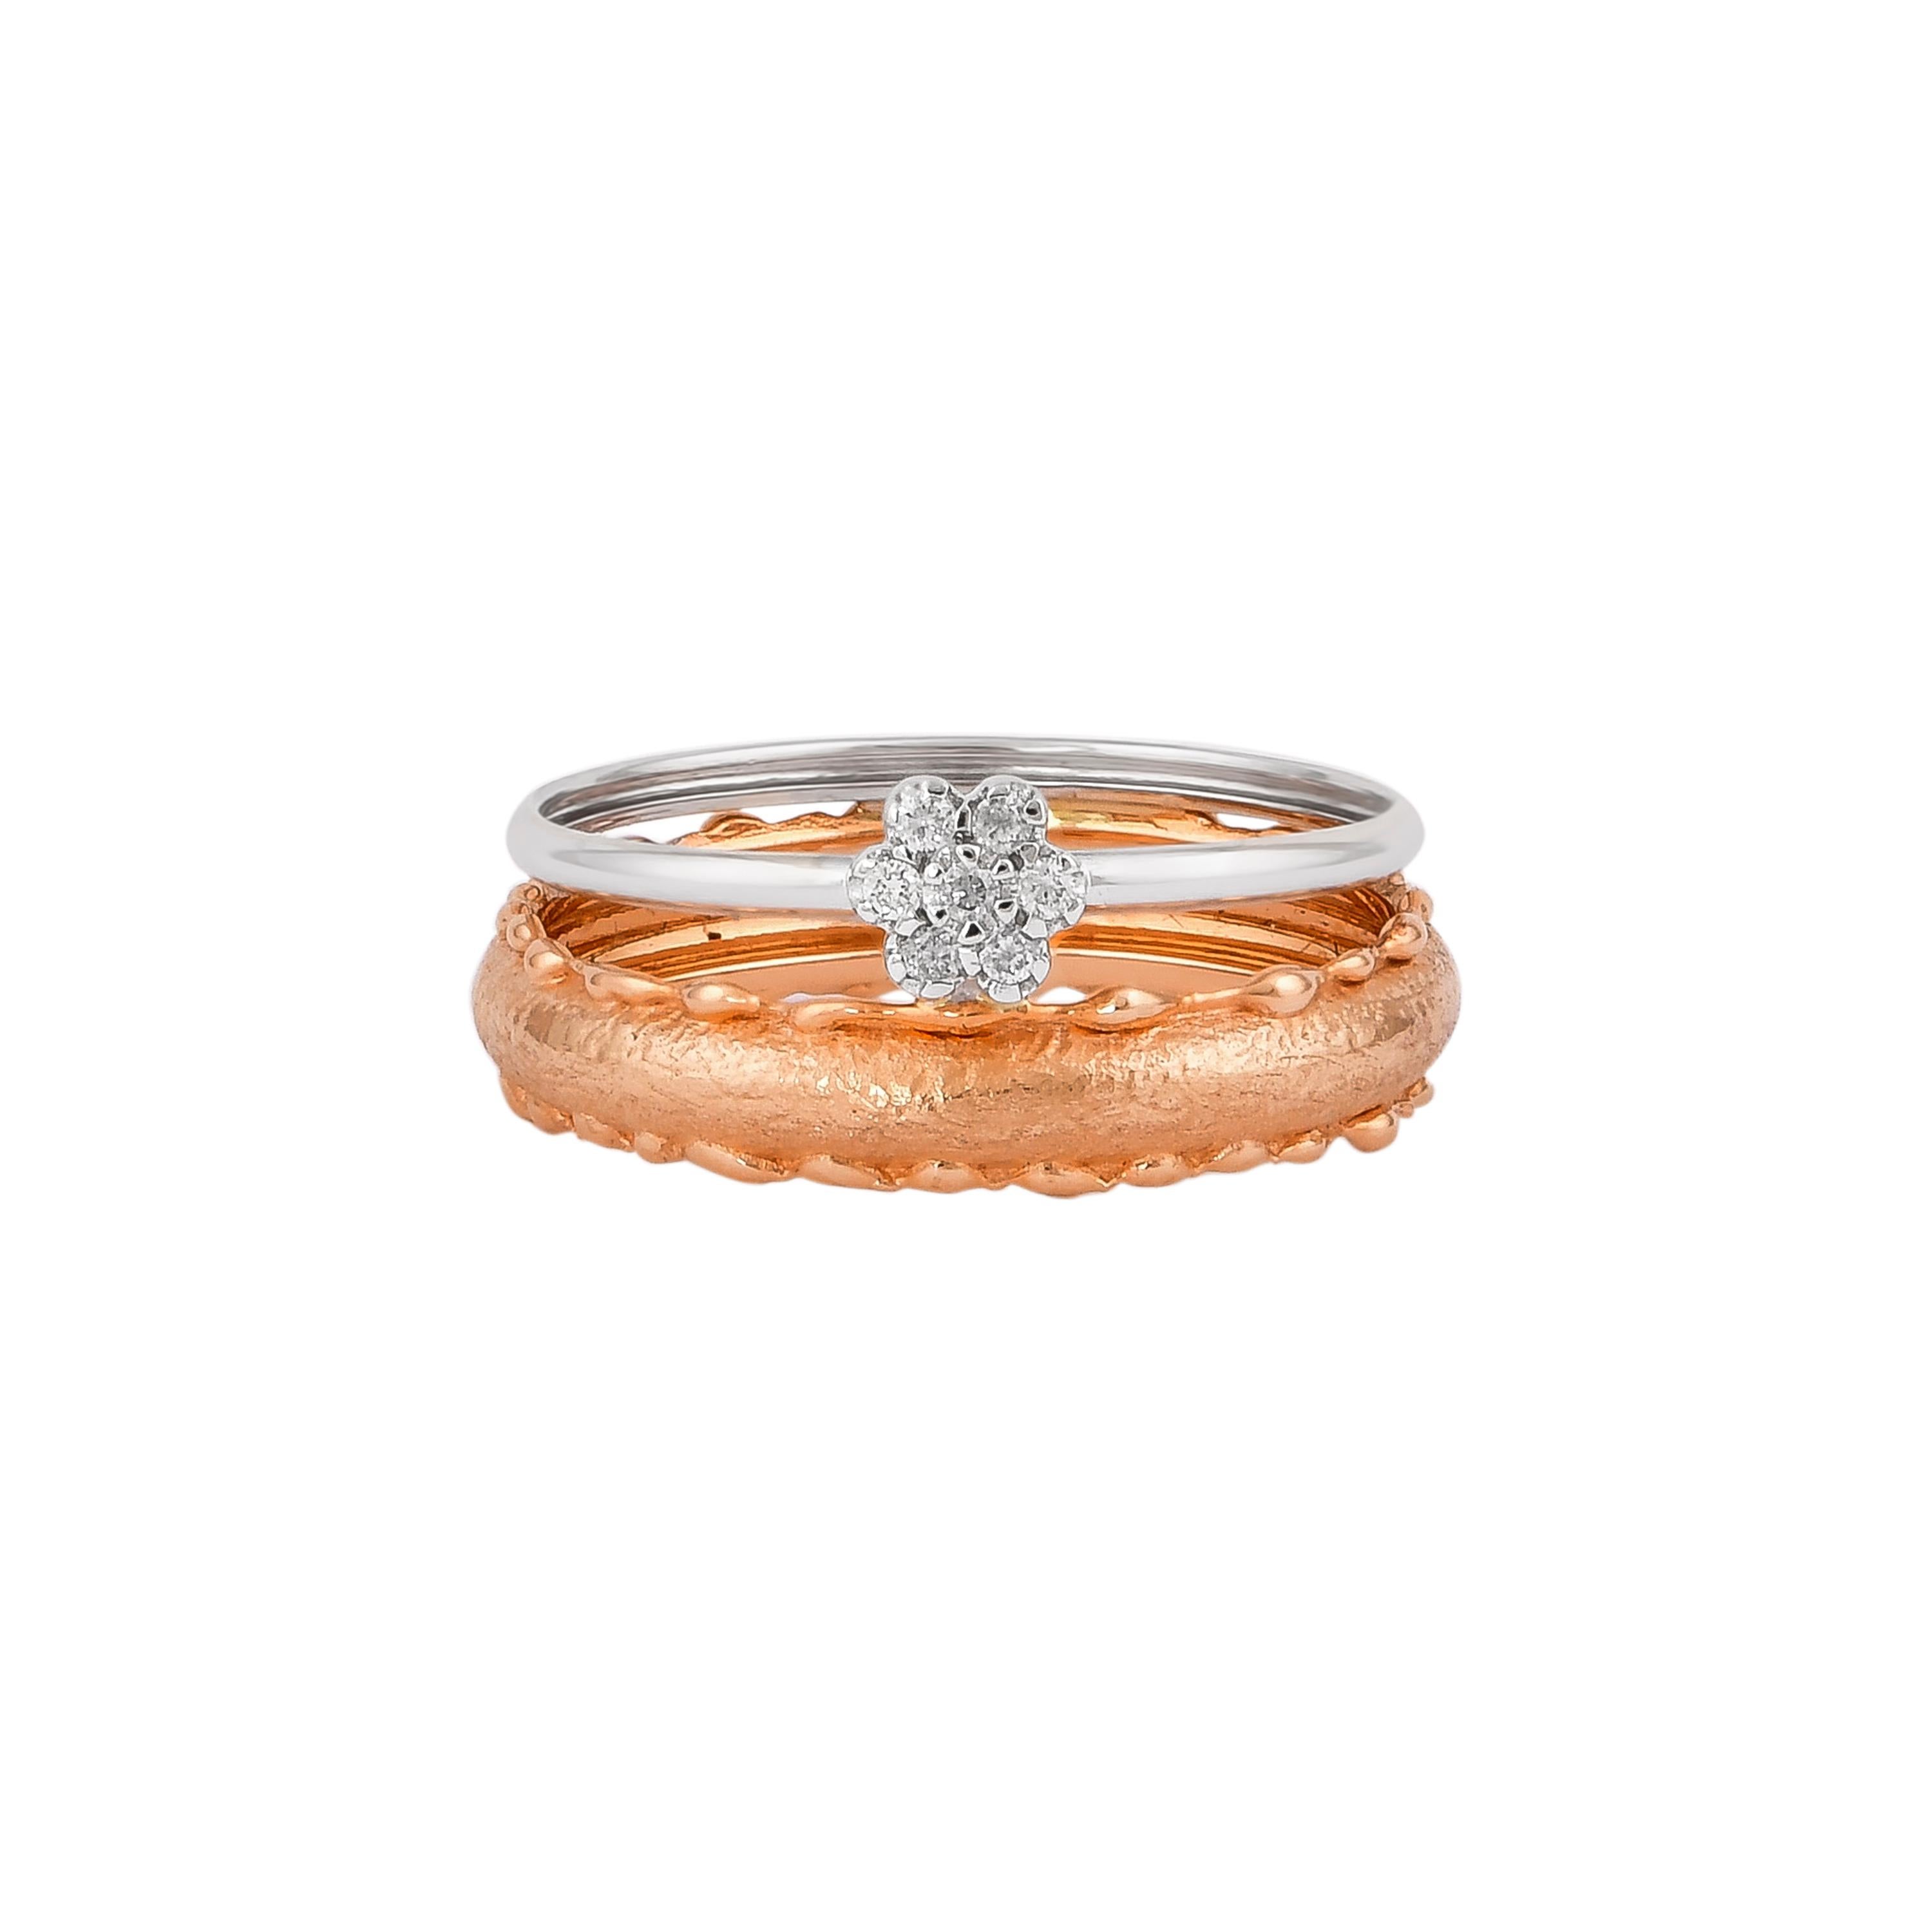 Round Cut 0.056 Carat Diamond Ring in 18 Karat White & Rose Gold For Sale